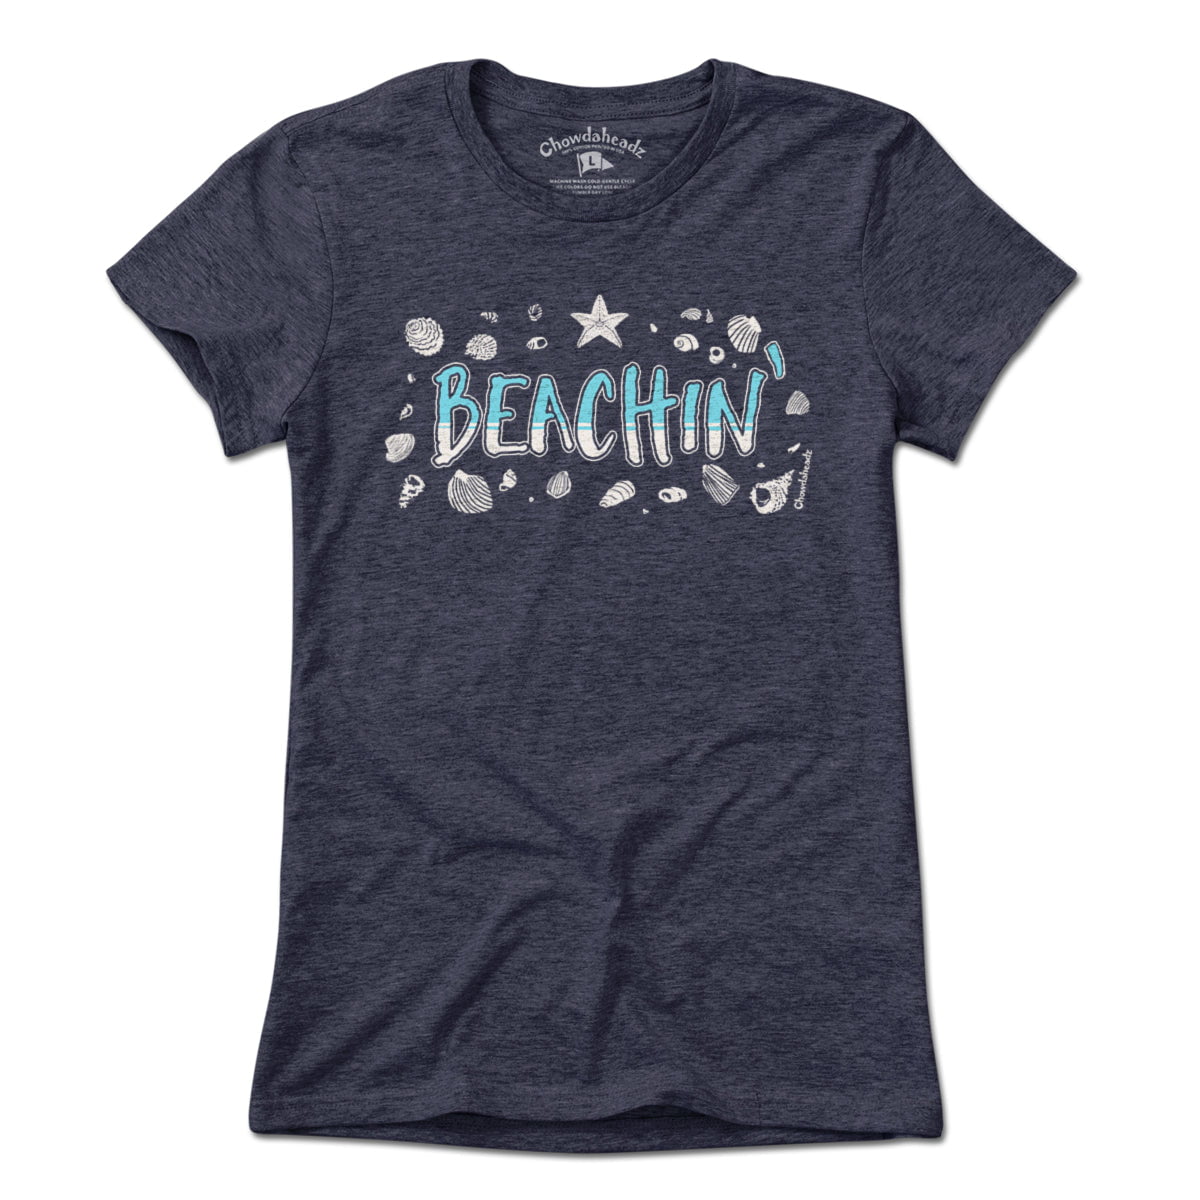 Beachin' T-Shirt - Chowdaheadz